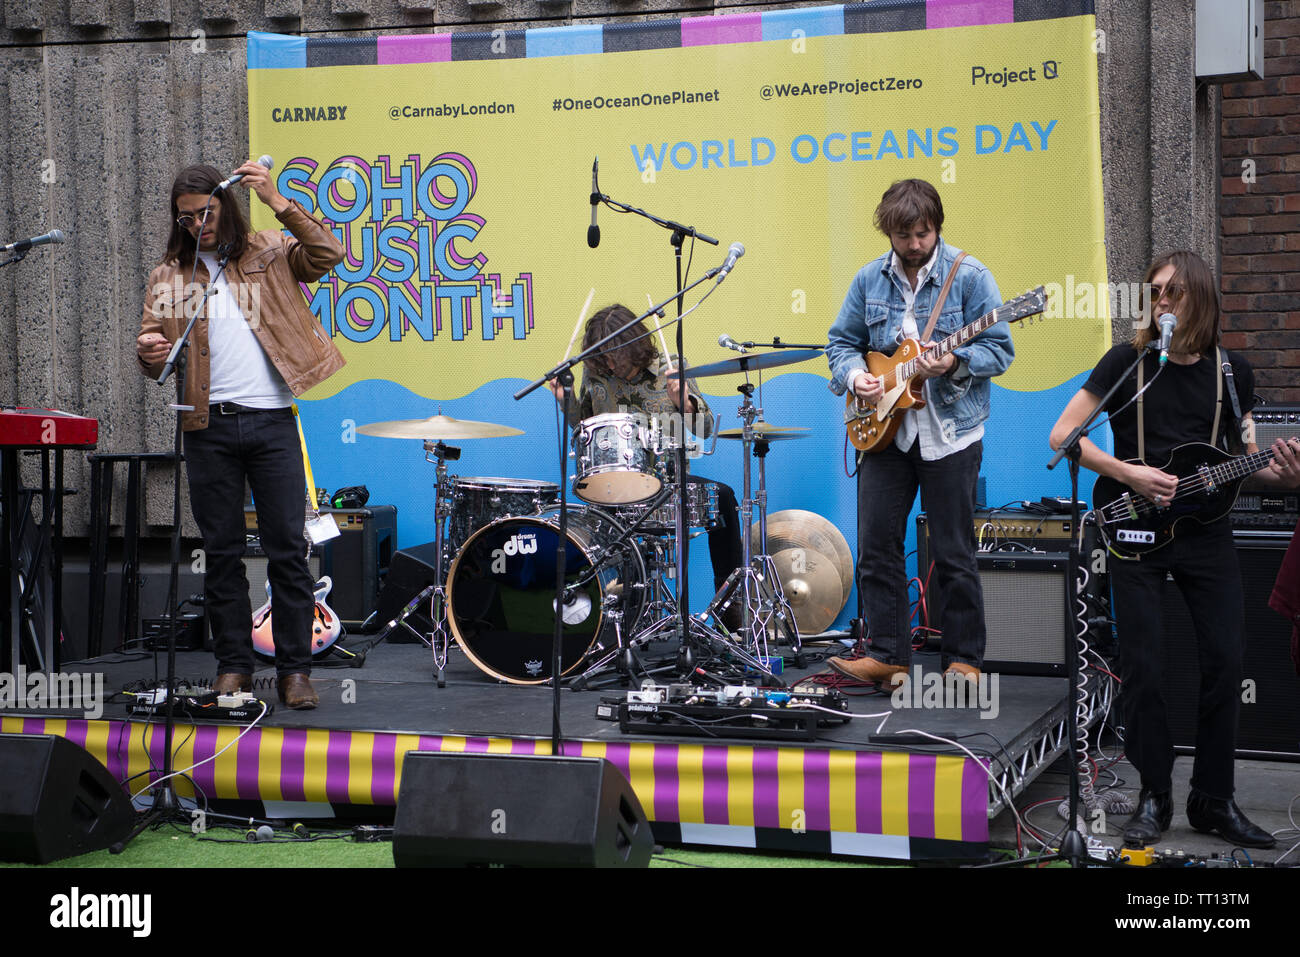 Le groupe de rock indépendant californien Vista Kicks donne des performances en plein air lors du Soho Music Month Worlds Oceans Day, Londres, Royaume-Uni Banque D'Images